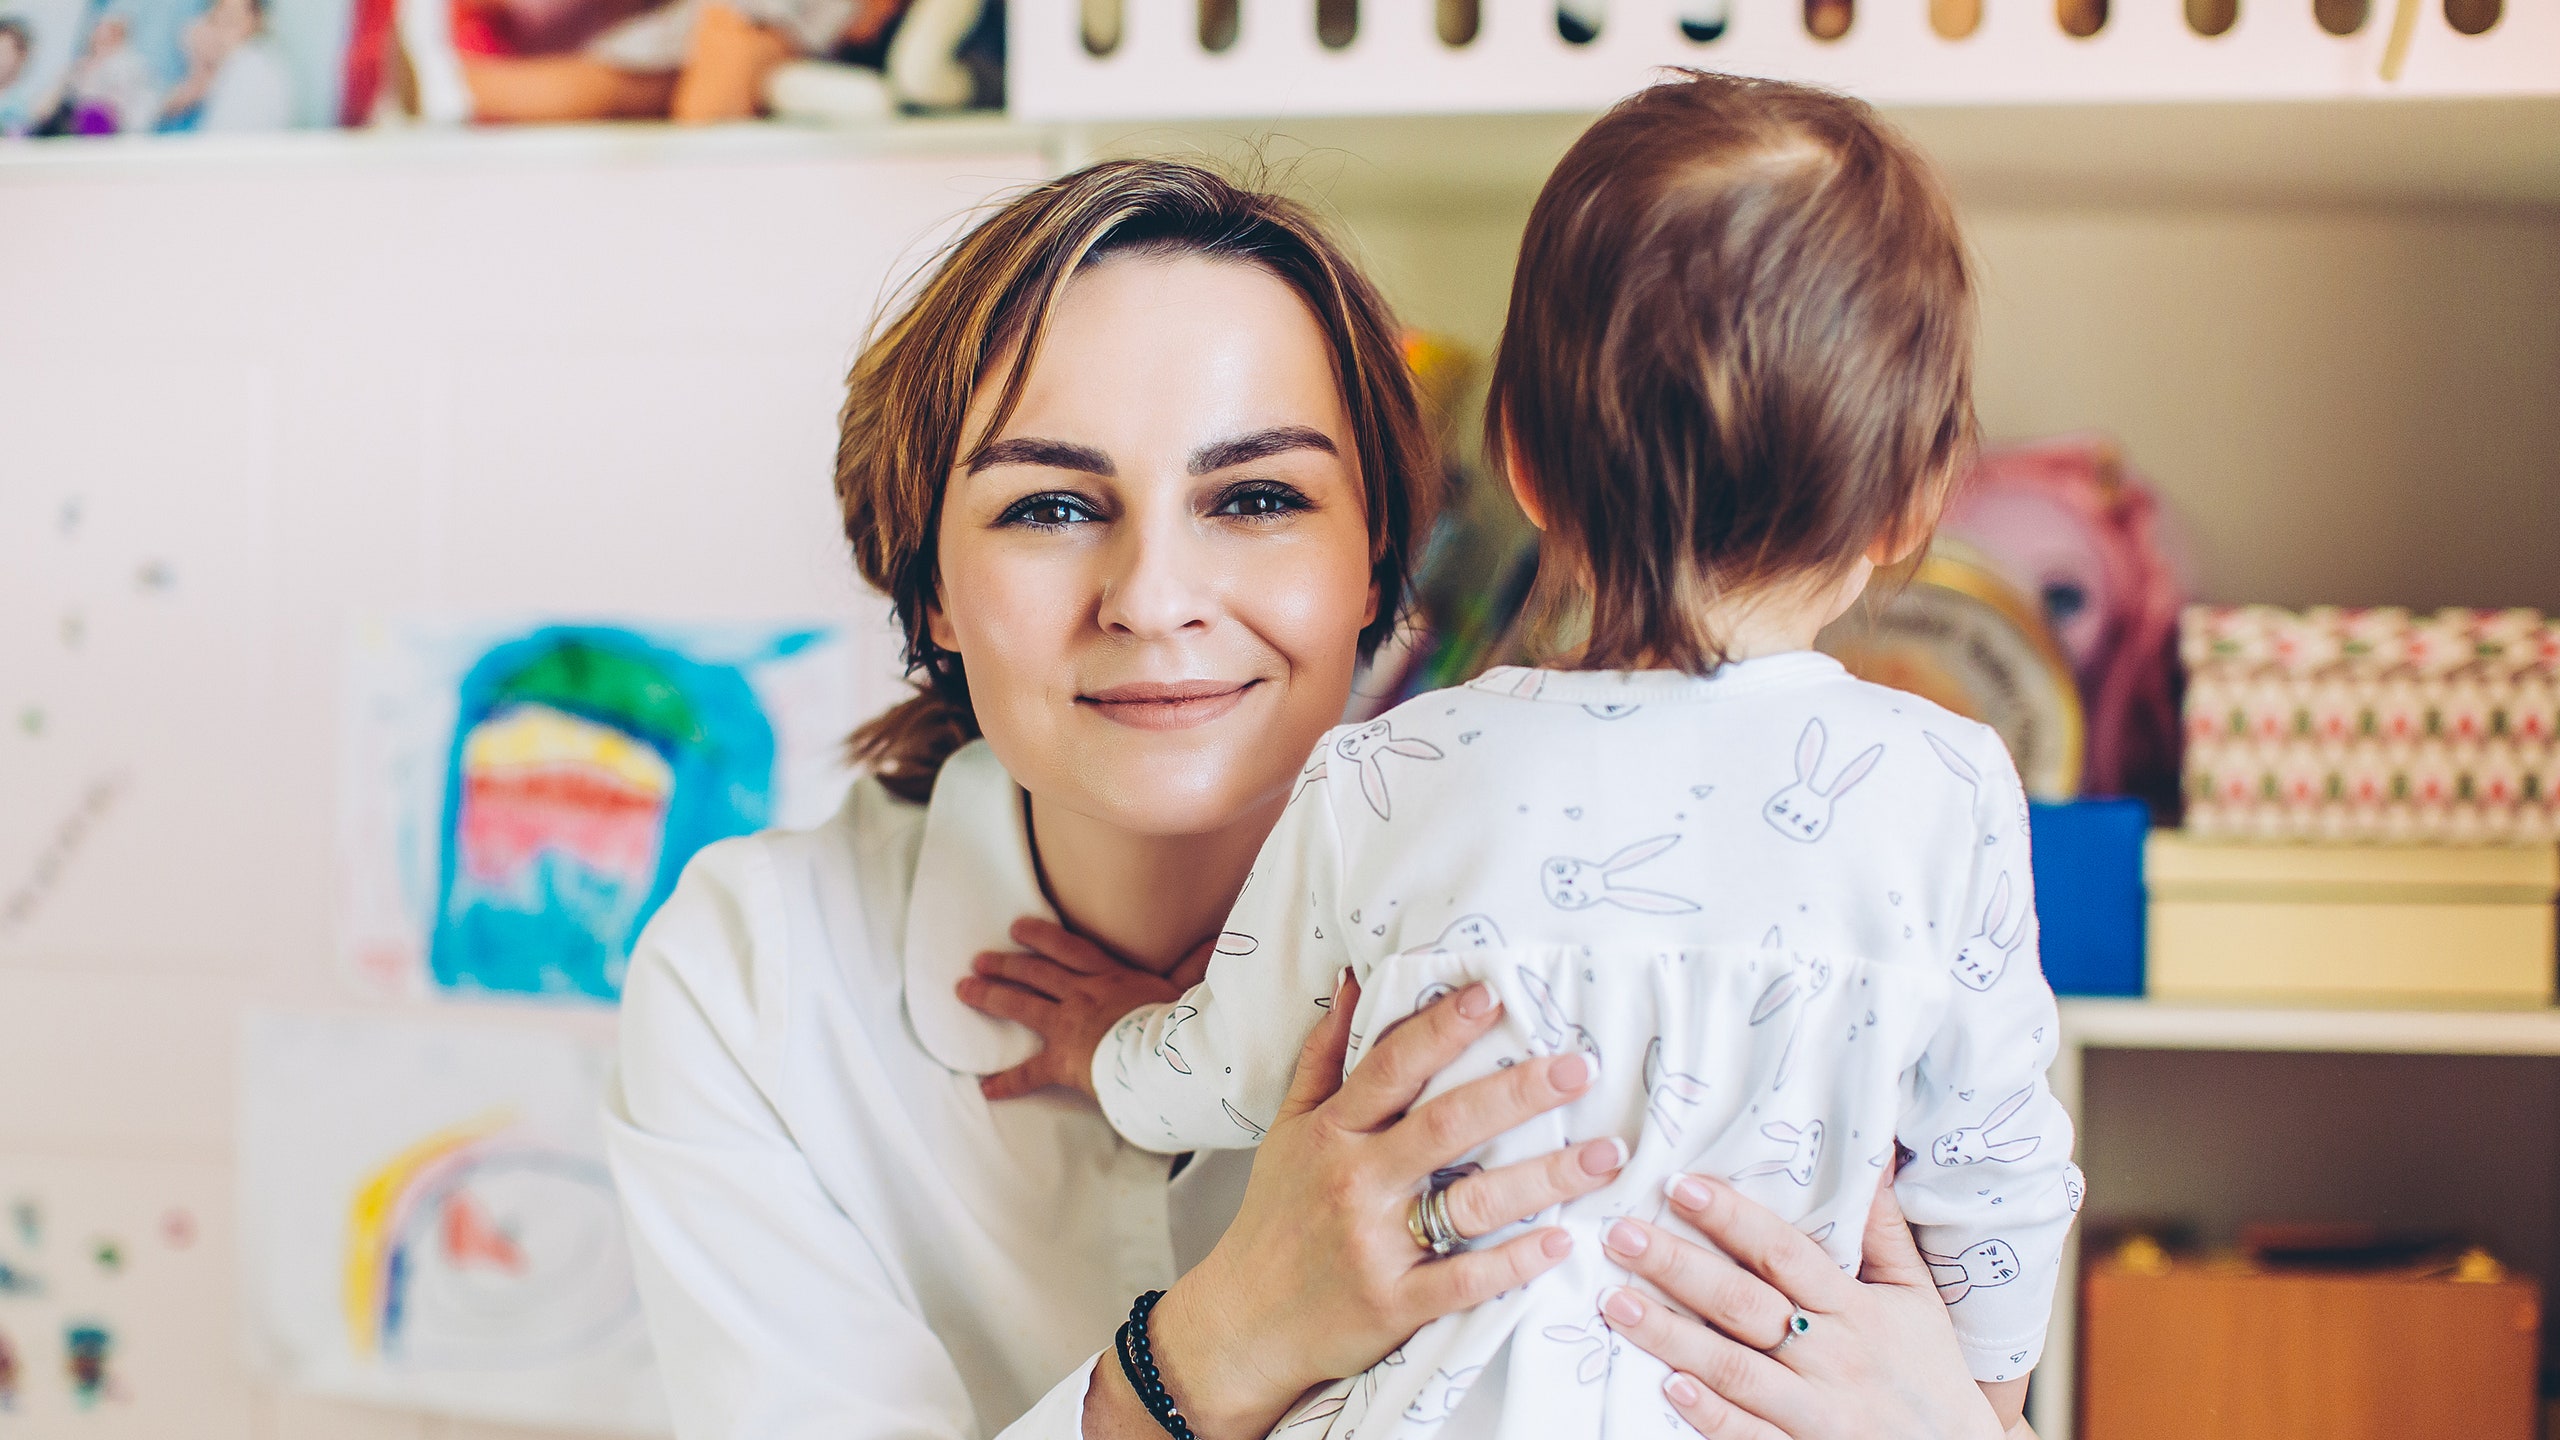 Ксения Вагнер — о том как самоизоляция с детьми и мужем помогает разобраться в себе